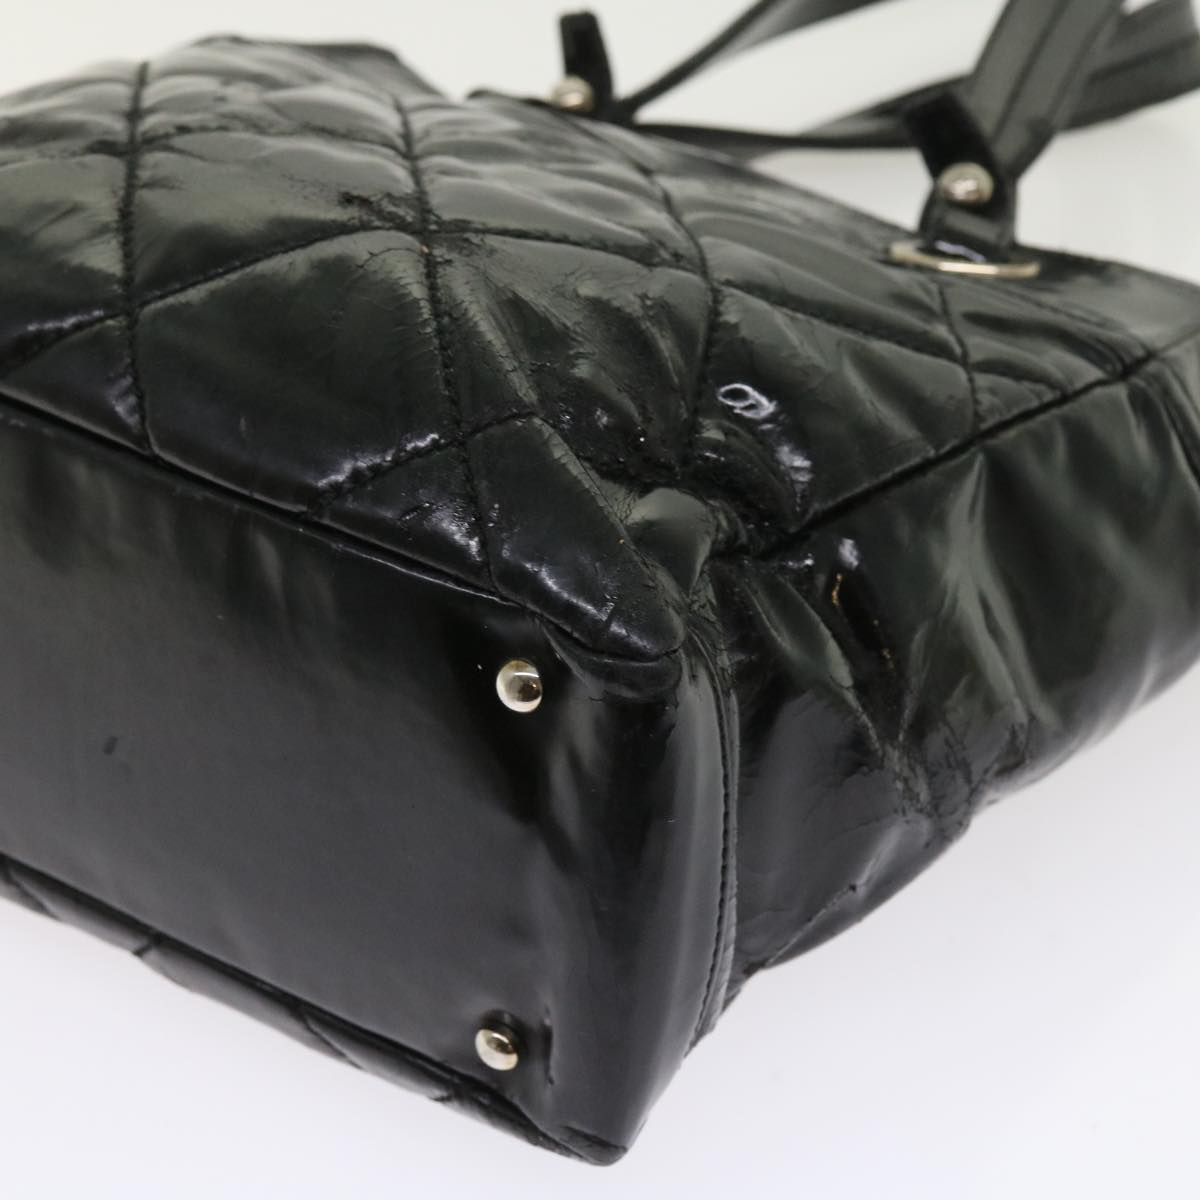 CHANEL Paris Biarritz Hand Bag Patent leather Black CC Auth bs8268